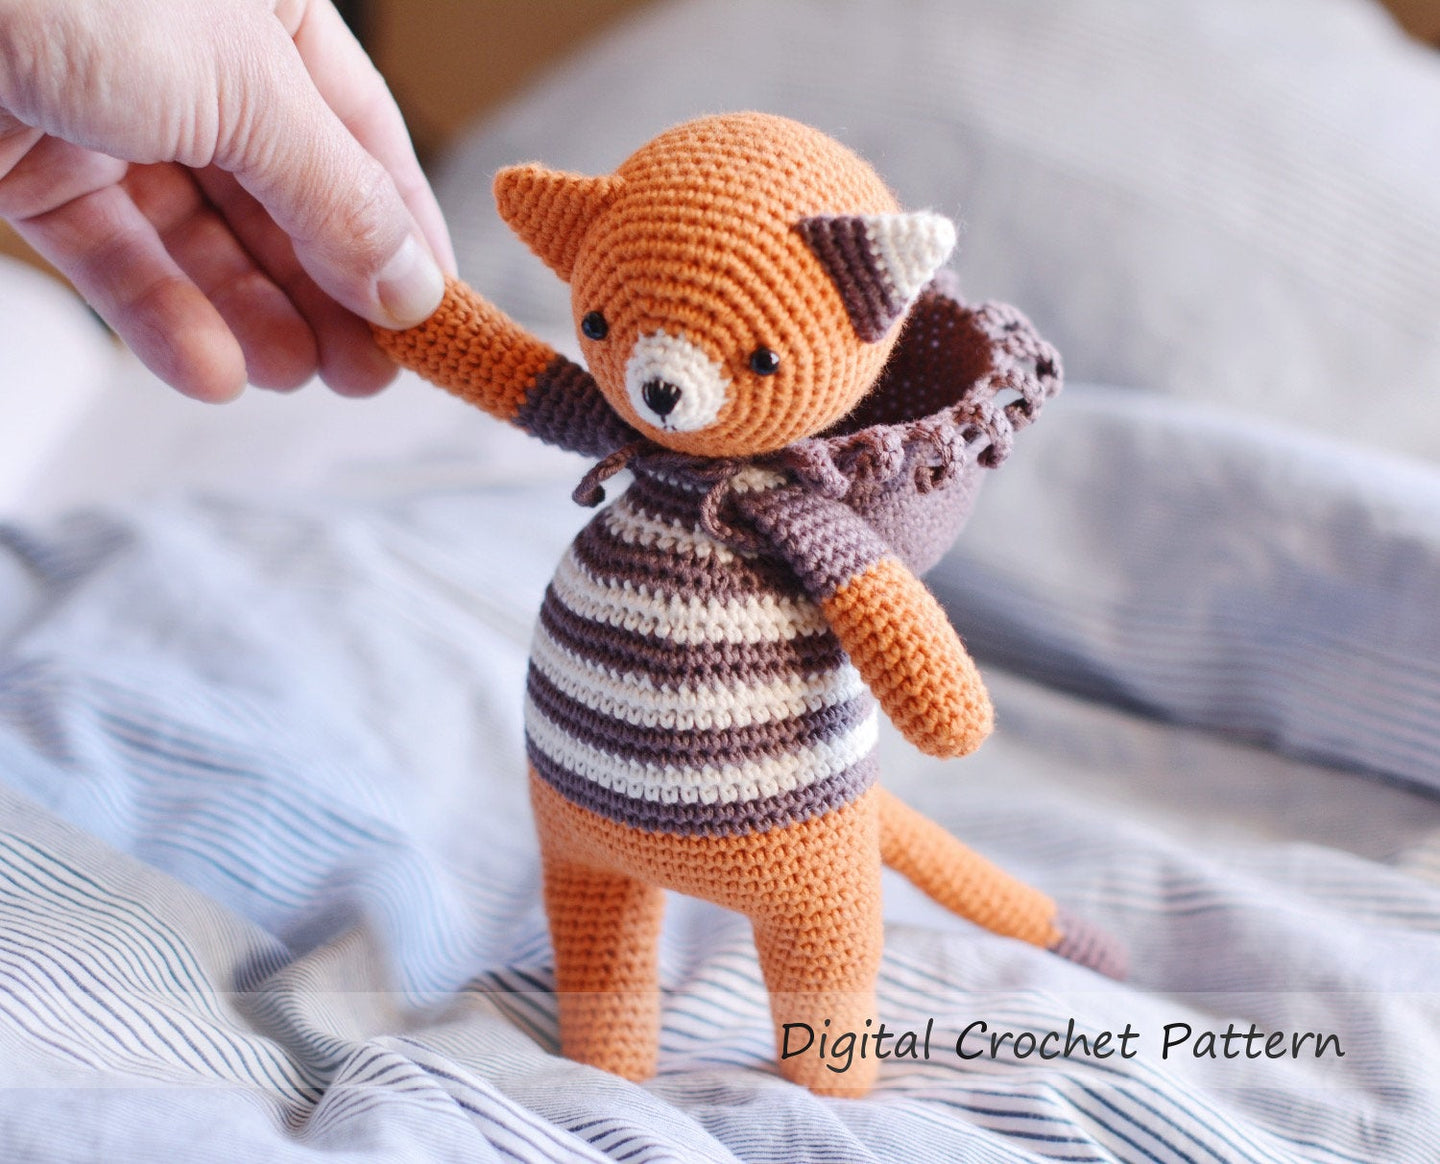 Crochet Pattern for a Cat & Lion Amigurumi - Firefly Crochet